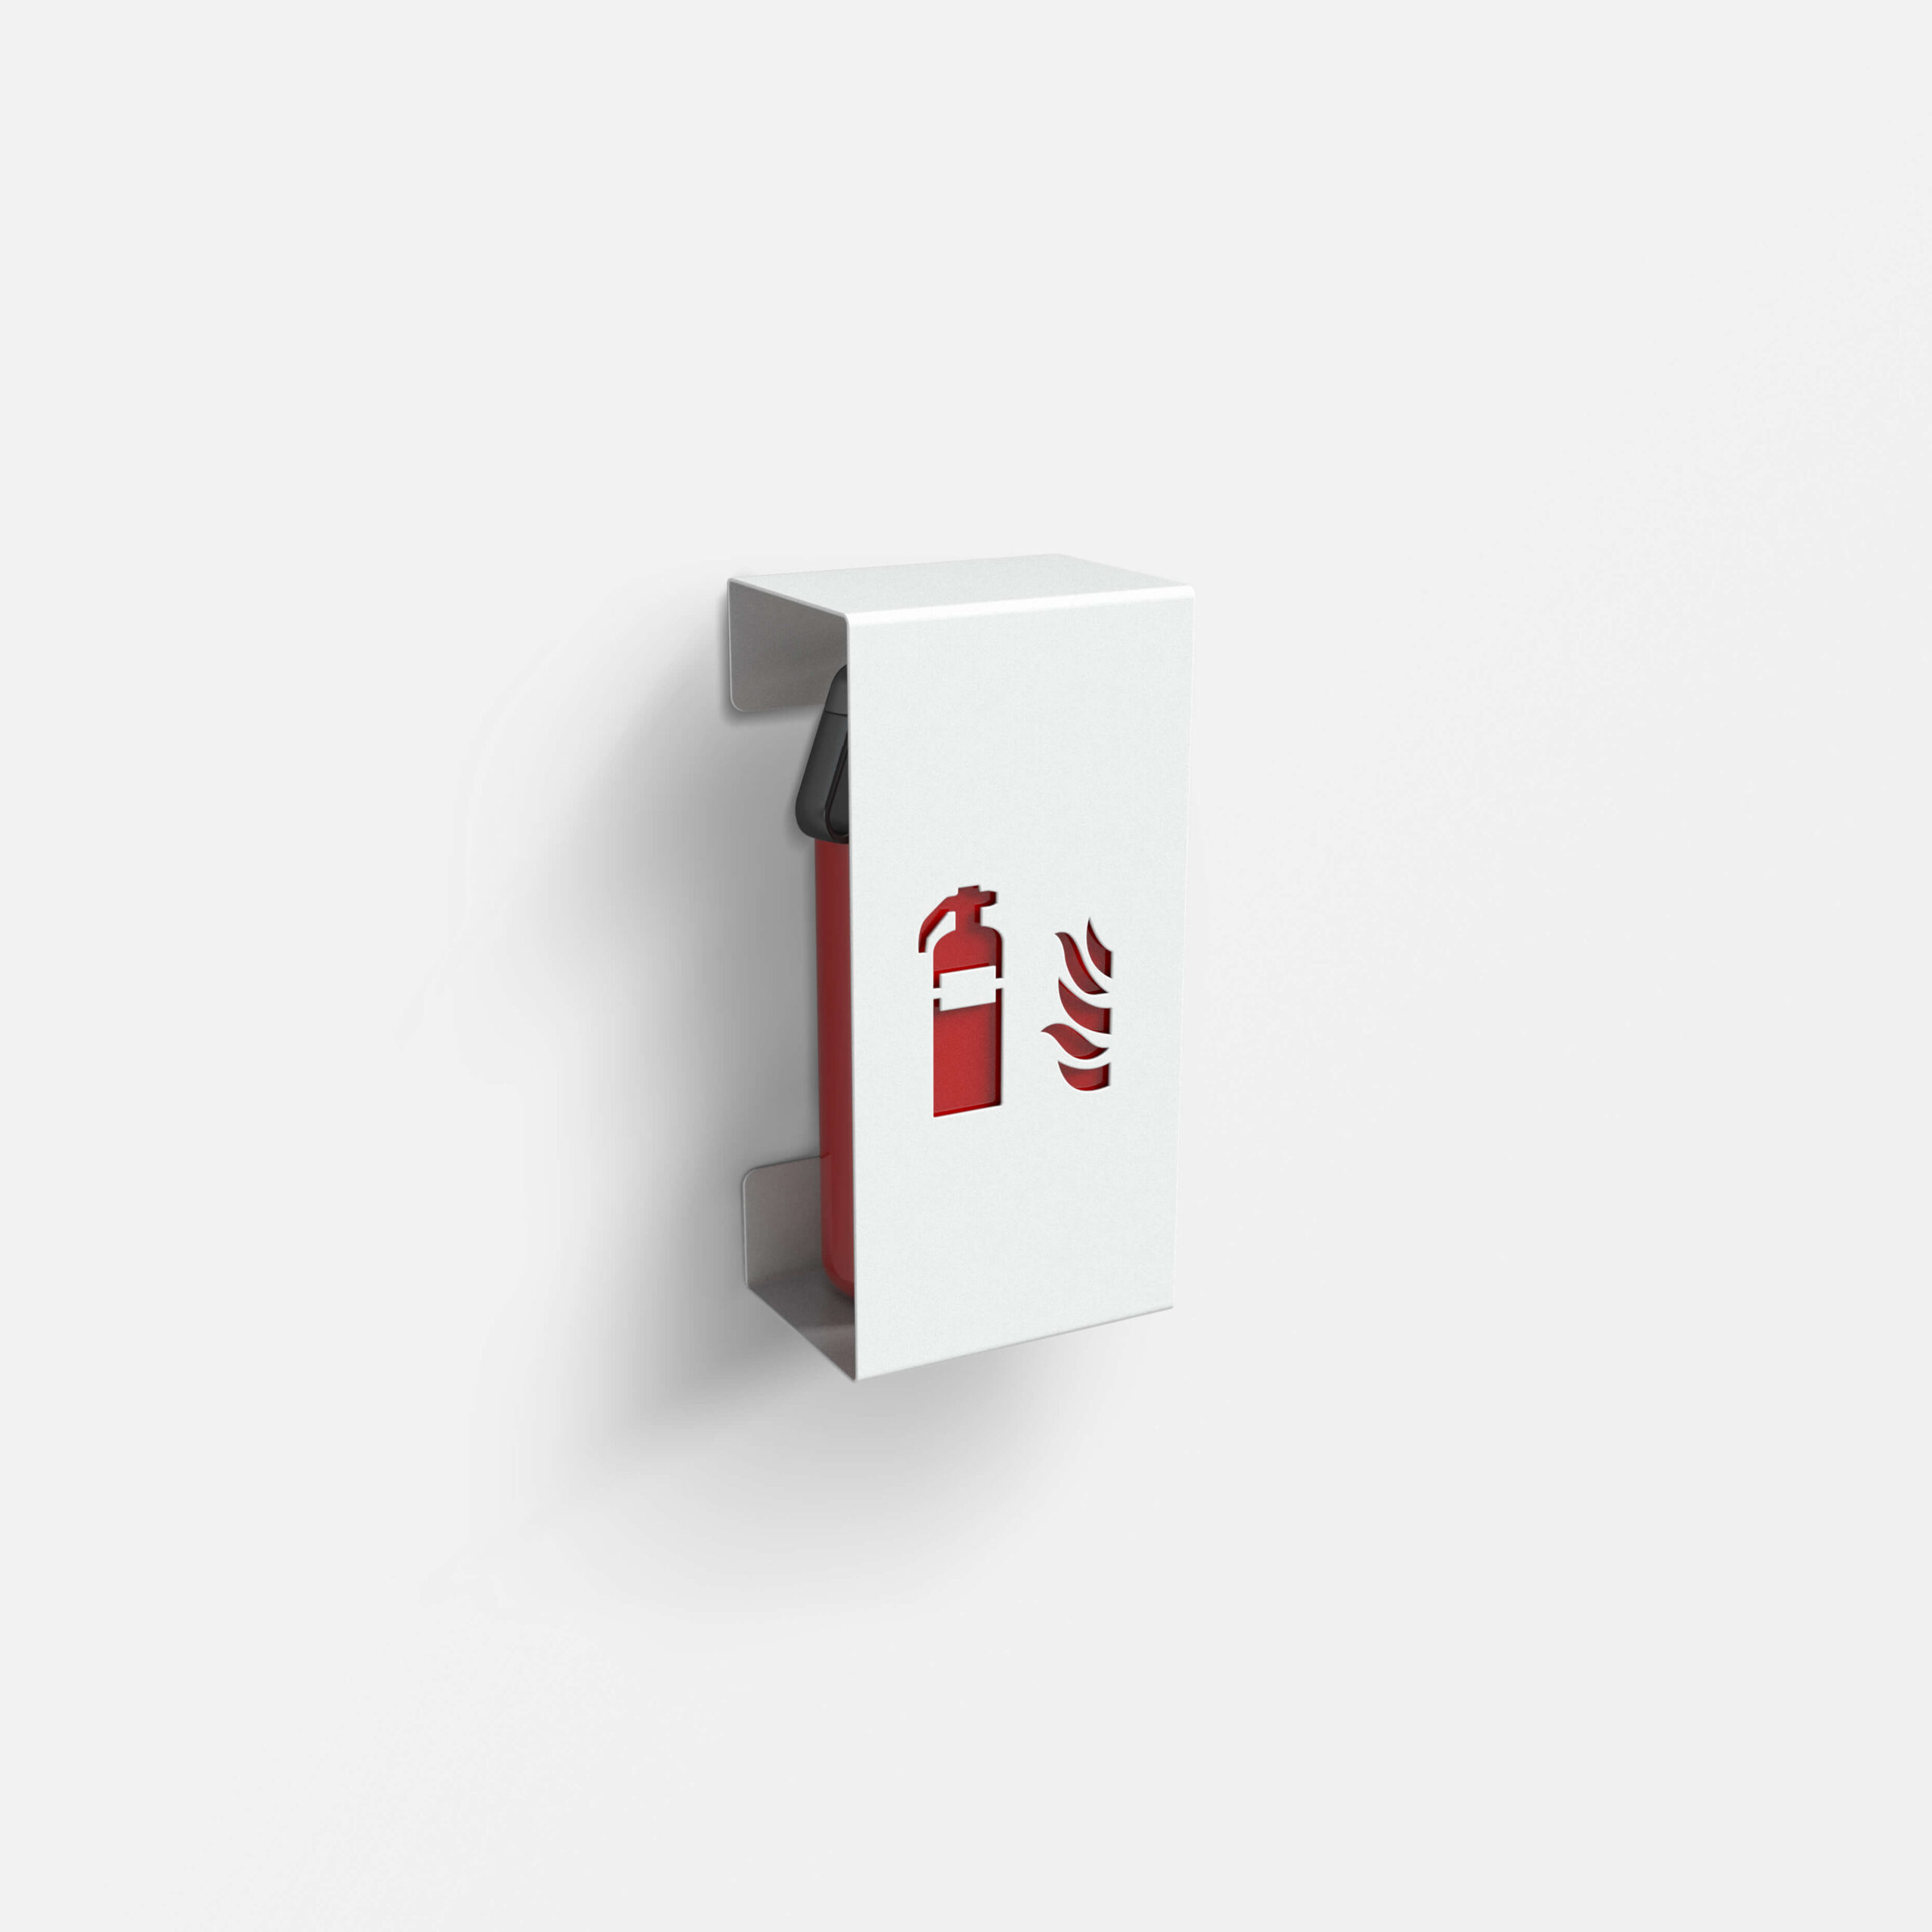 Feuerlöscherhalterung klein in weißem Design